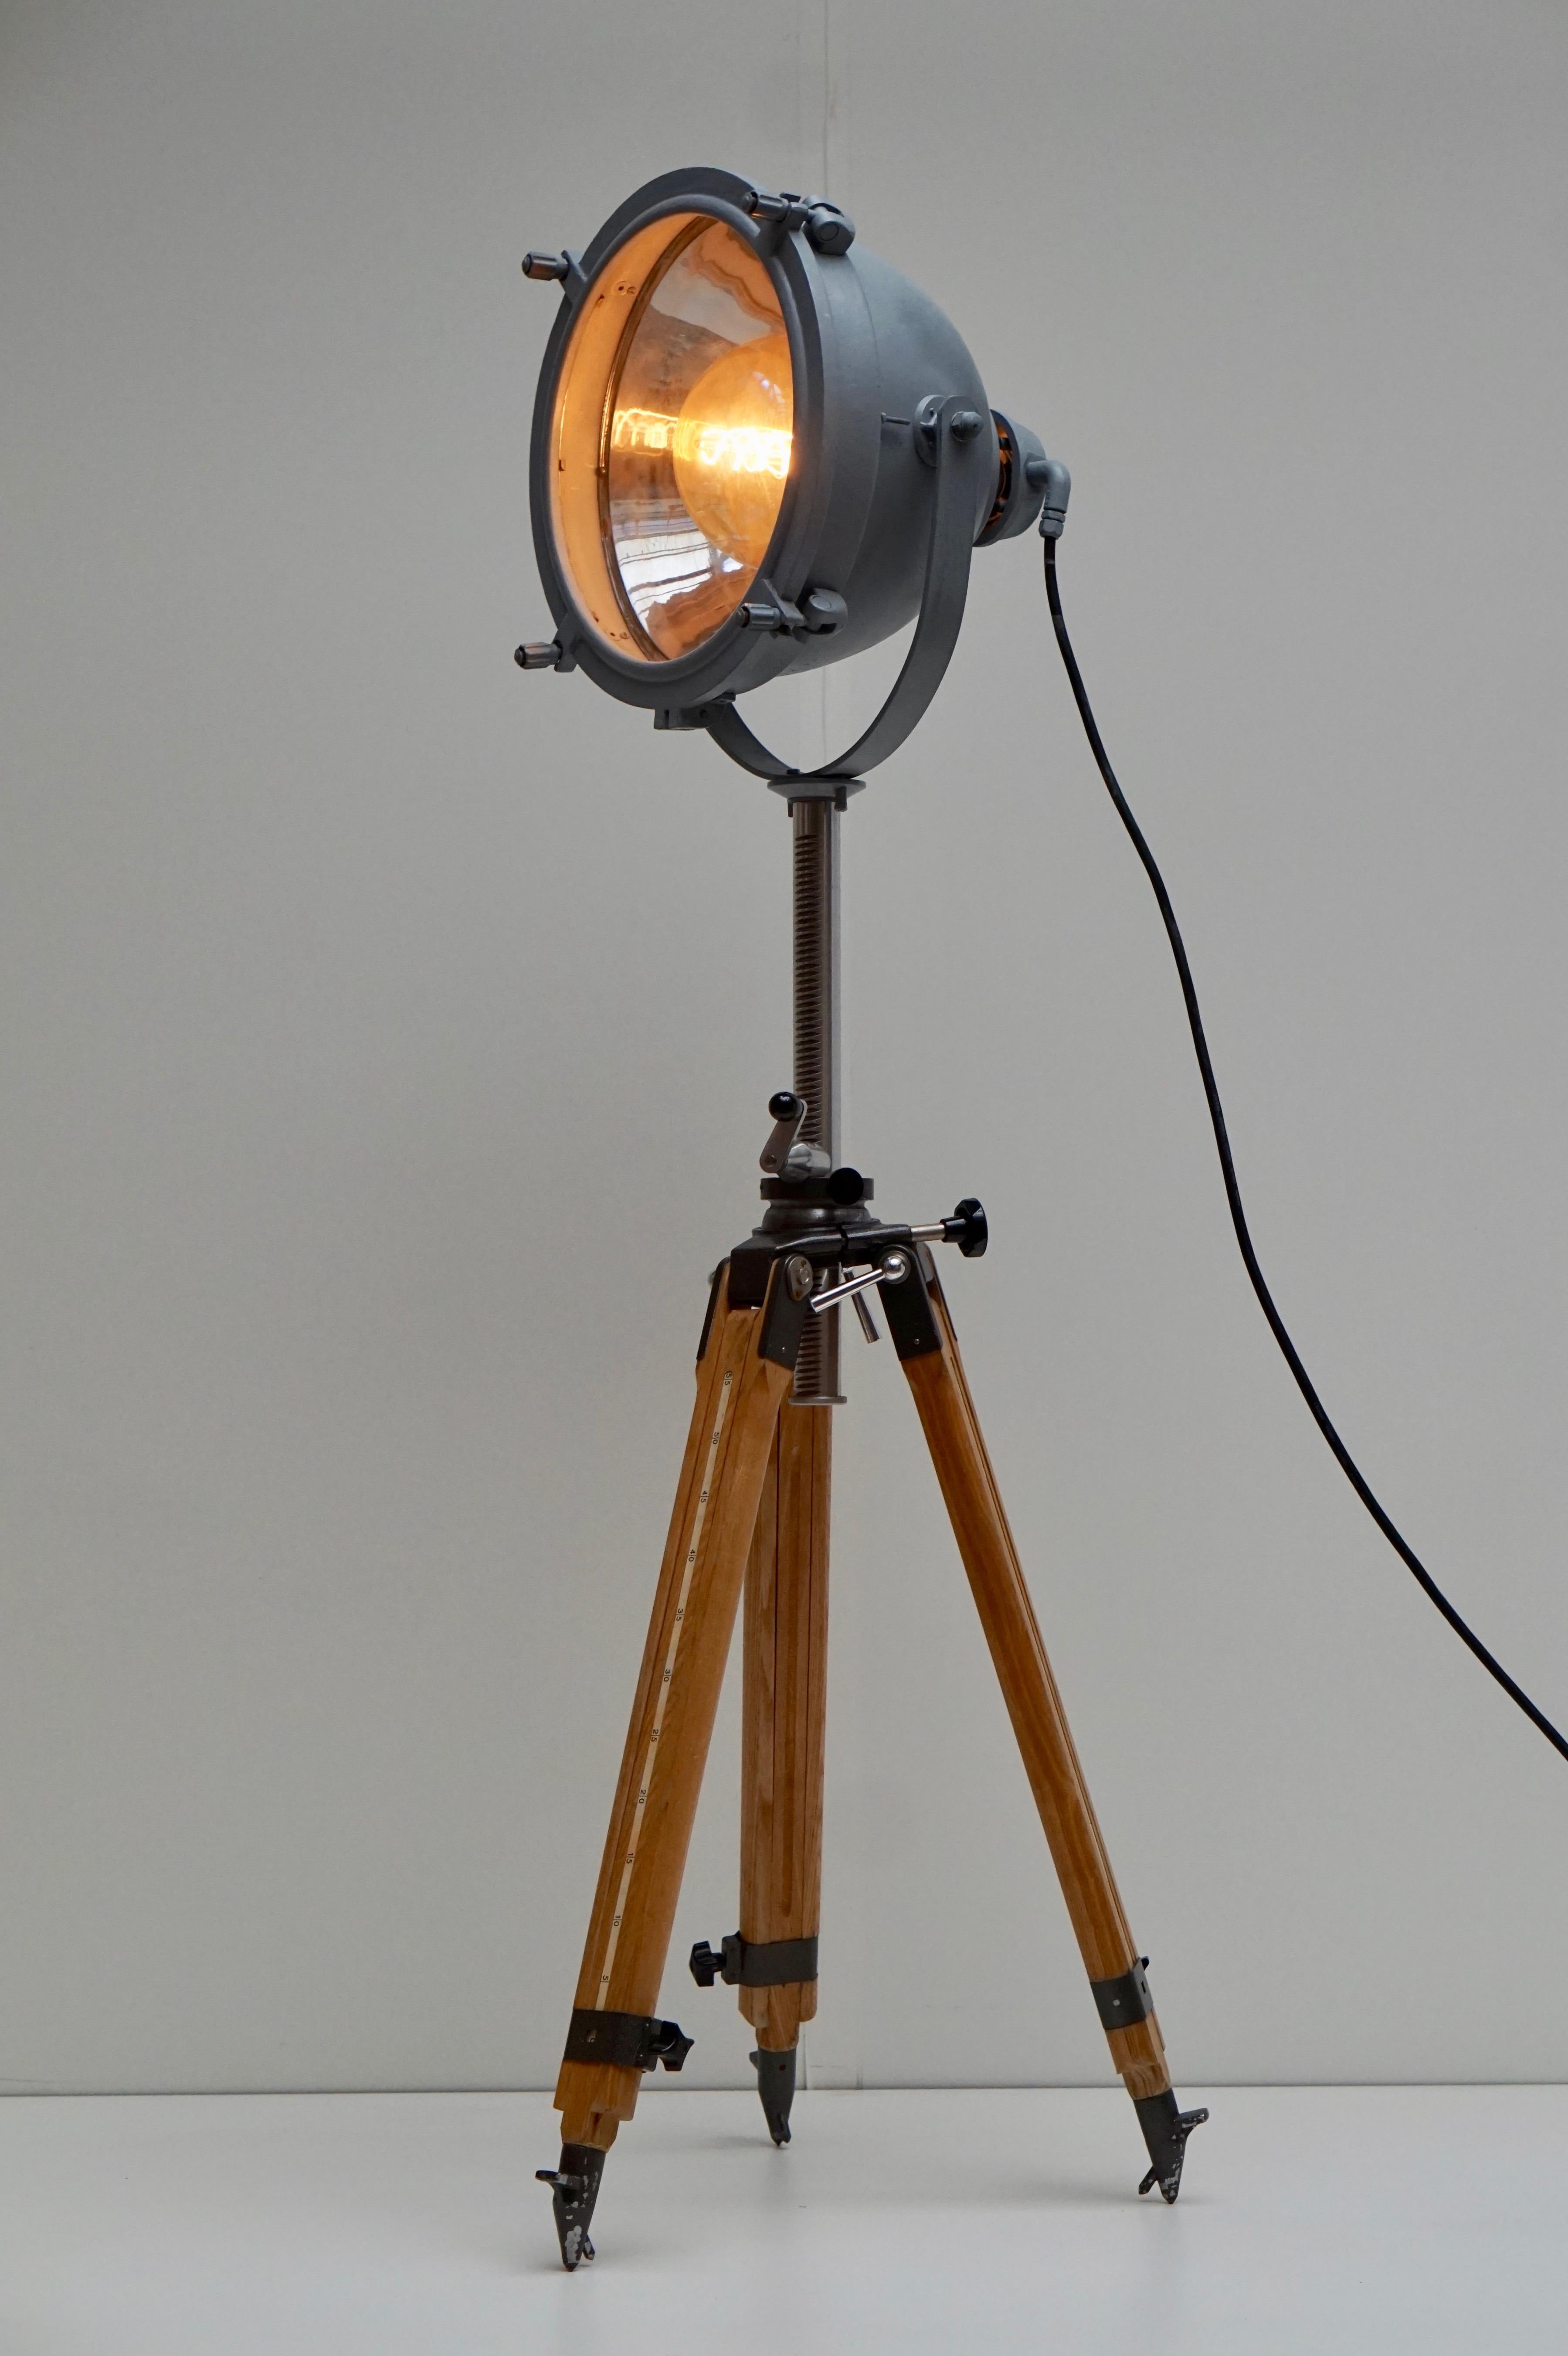 Un grand projecteur ou spot industriel vintage sur un trépied en bois, vers 1930-1950. En bon état vintage, recâblé et magnifiquement fini. 
Le lampadaire tripode est réglable et possède une ampoule E27.
Fabriqué par Francis Searchlights en